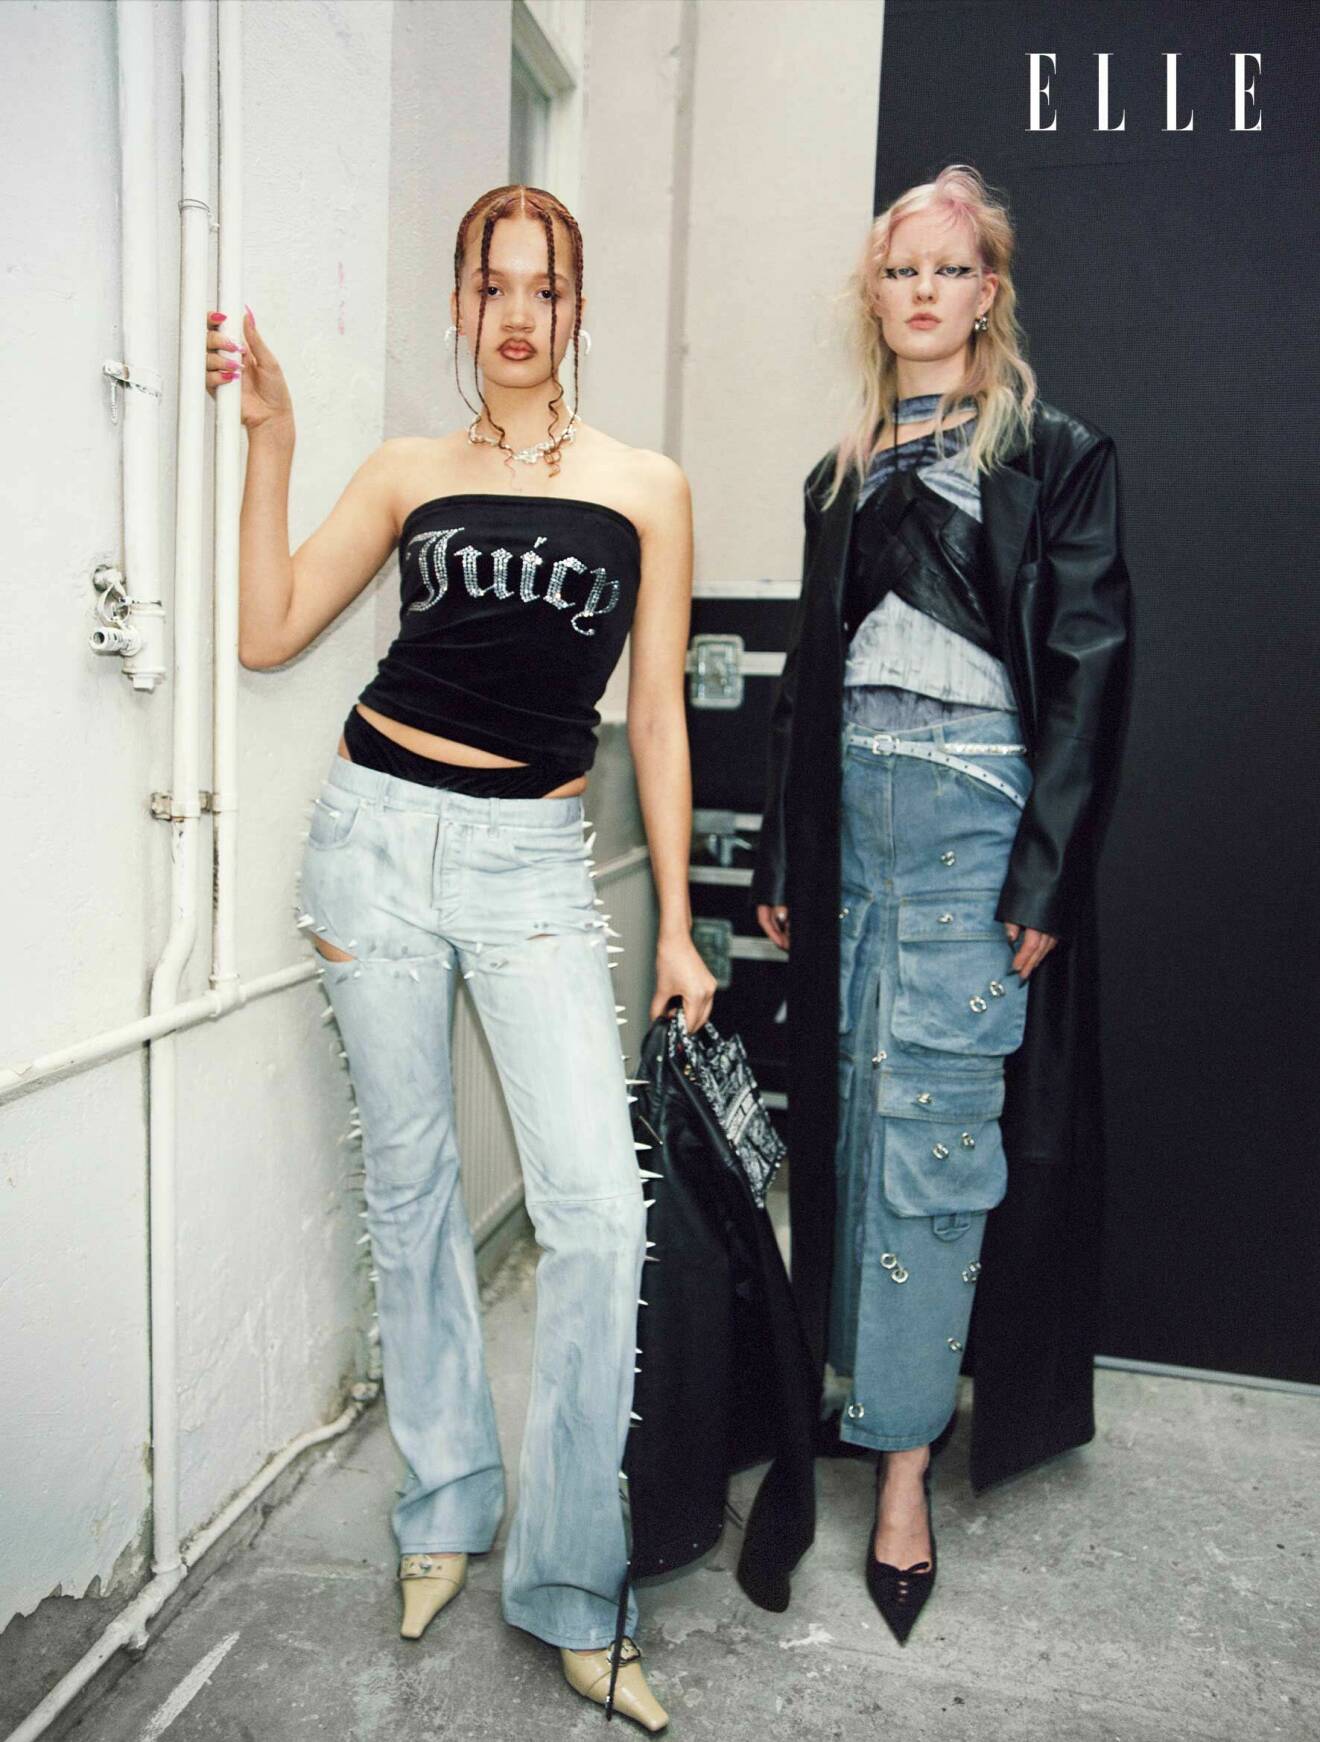 Livia till vänster har på sig en svart tuptopp och ljusa jeans, Linn till höger har på sig en svart kappa, piercad denimkjol och en svart kort topp